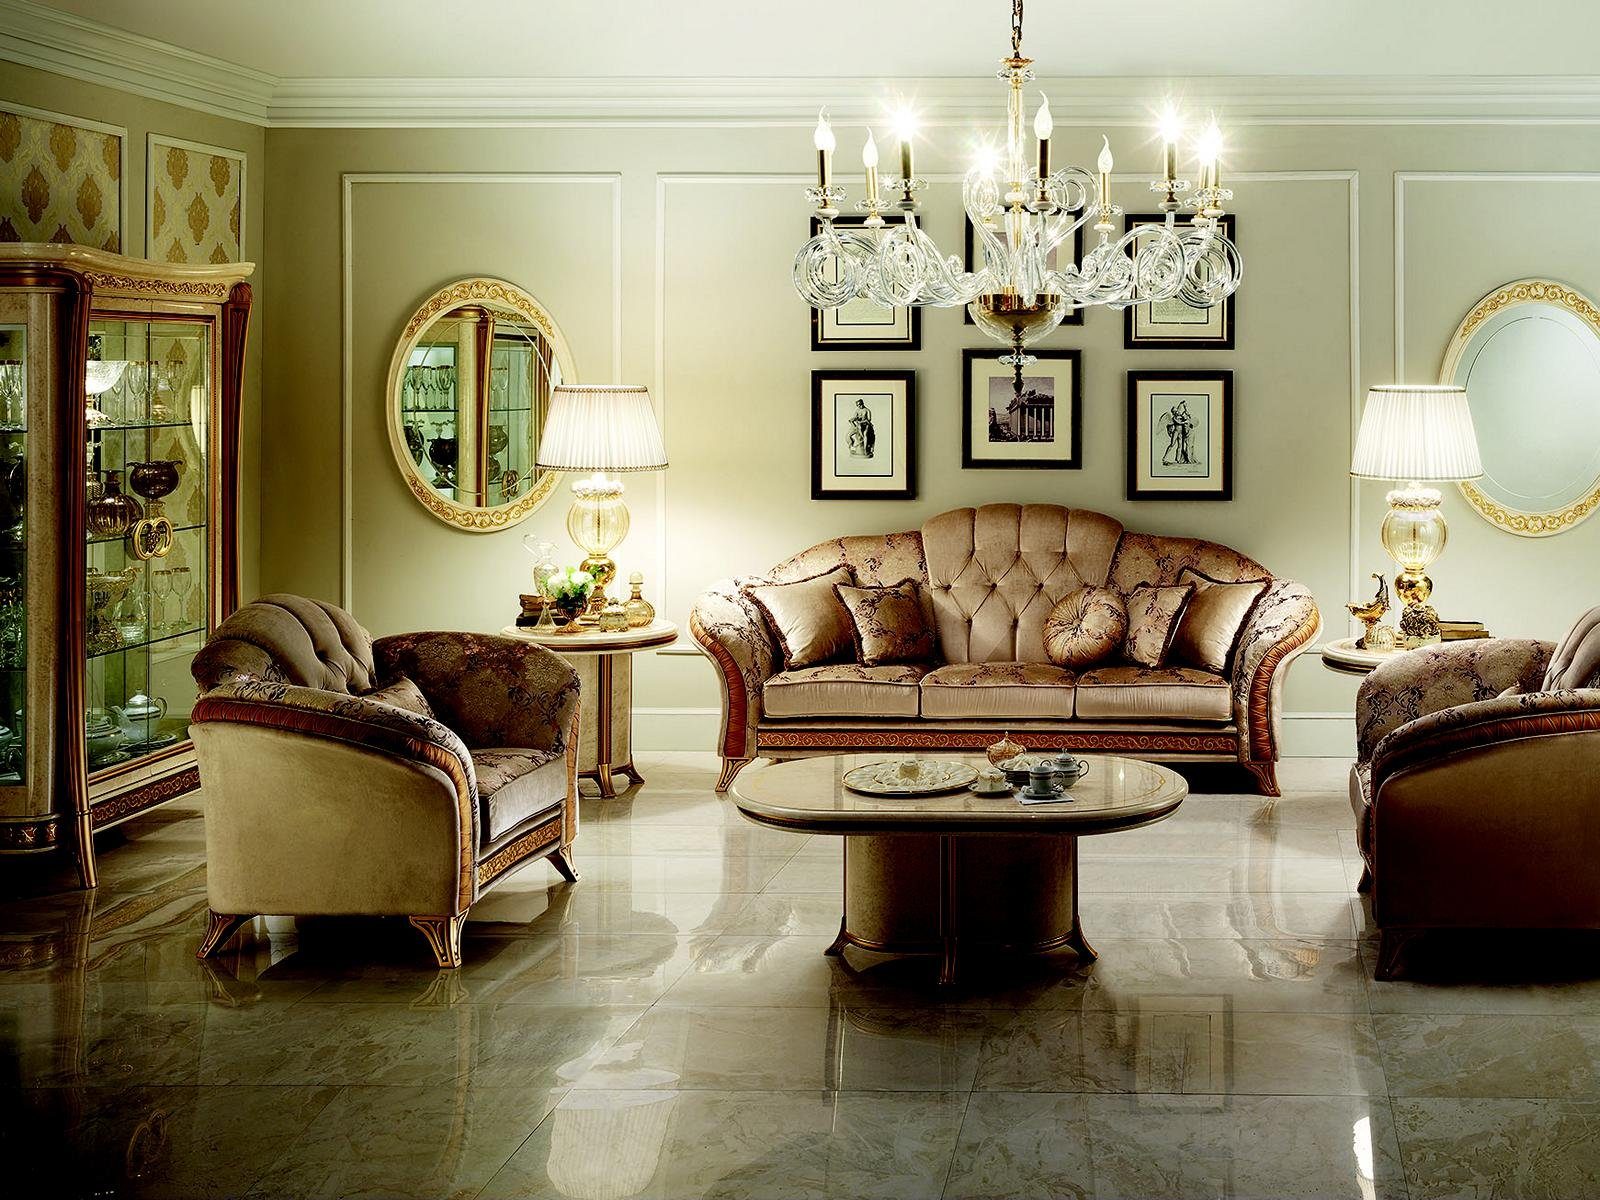 JVmoebel Wohnzimmer-Set, Luxus Klasse 3+2+1 Italienische Möbel Sofagarnitur Couch Sofa Neu arredoclassic™